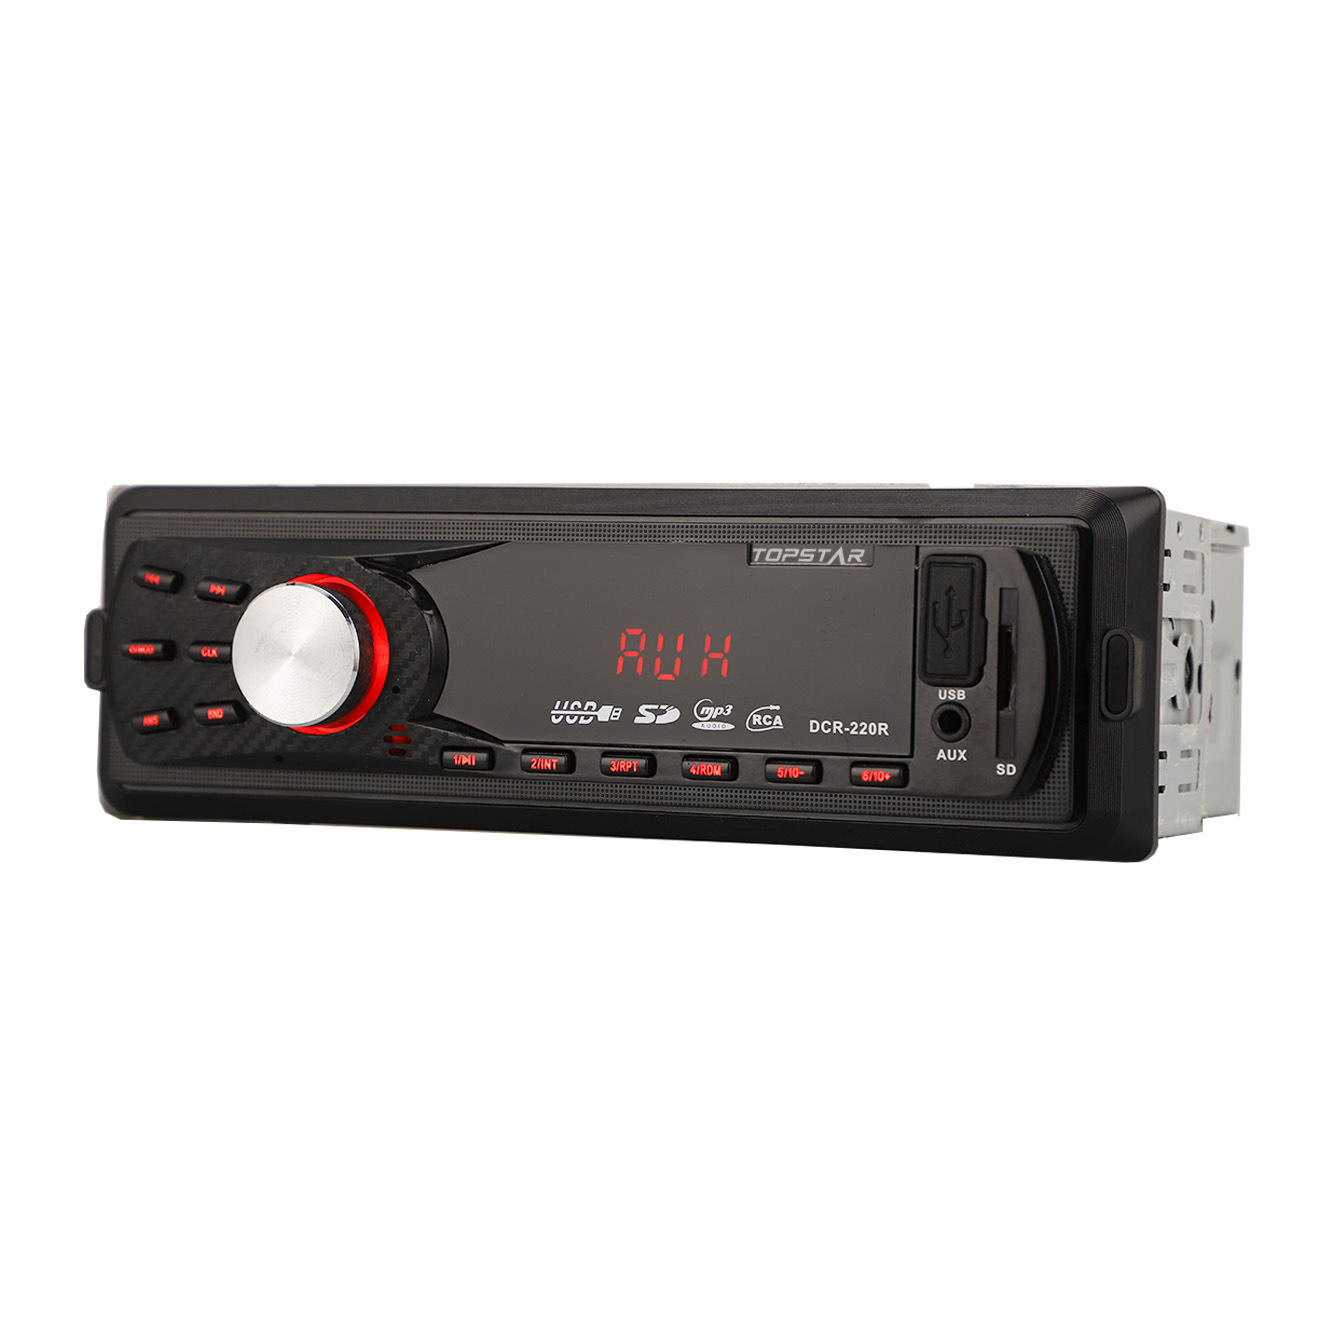 Transmissor fm de áudio automático, áudio estéreo para carro, acessórios para carro, din único, reprodutor de mp3, usb